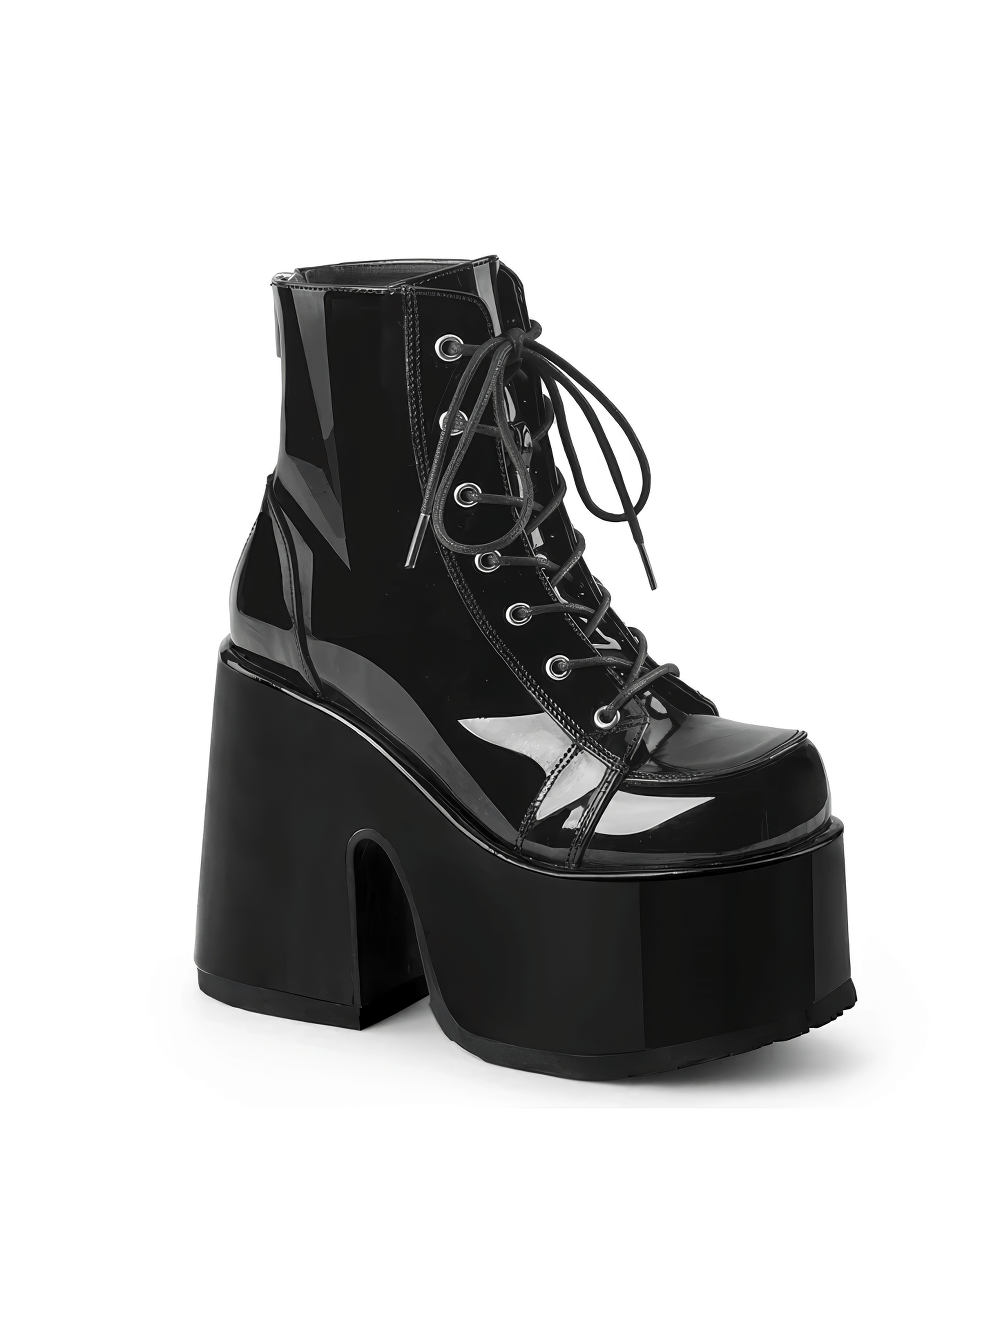 DEMONIA Women's Black Patent Lace-Up Platform Ankle Boots